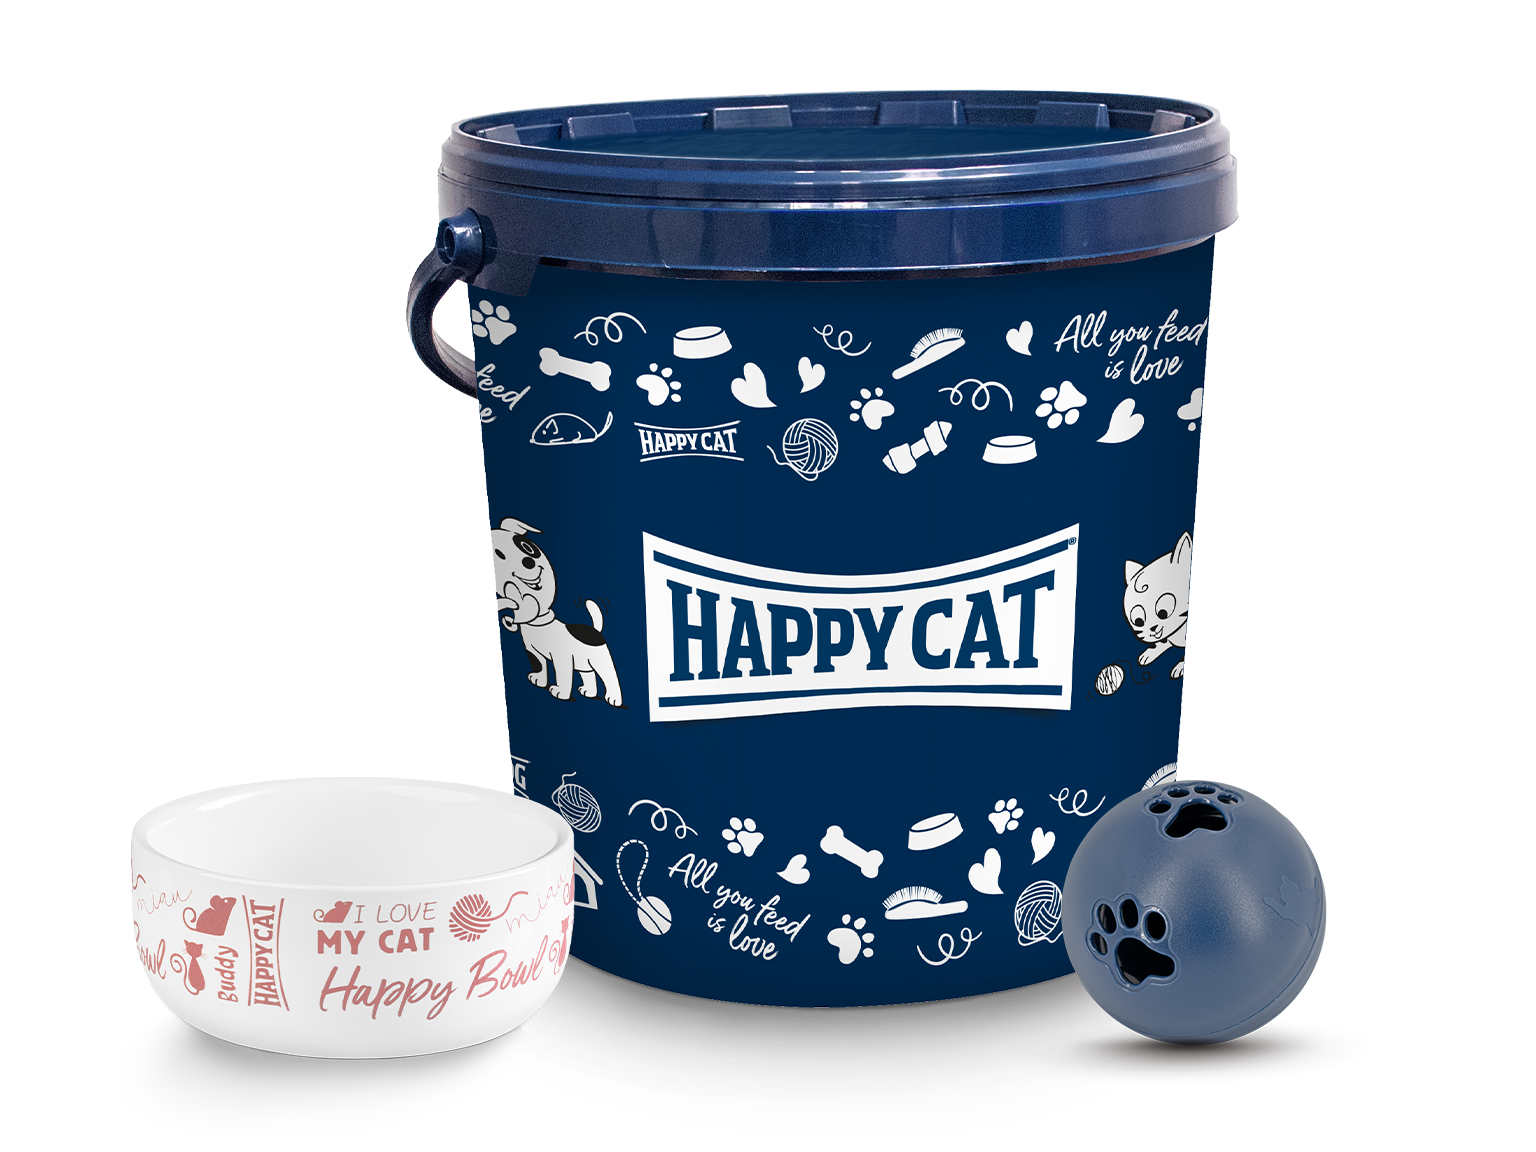 Blaue Happy Cat Futtertonne in der Mitte, links daneben ein Keramiknapf mit Happy Cat Aufdruck und rechts daneben ein Snackball